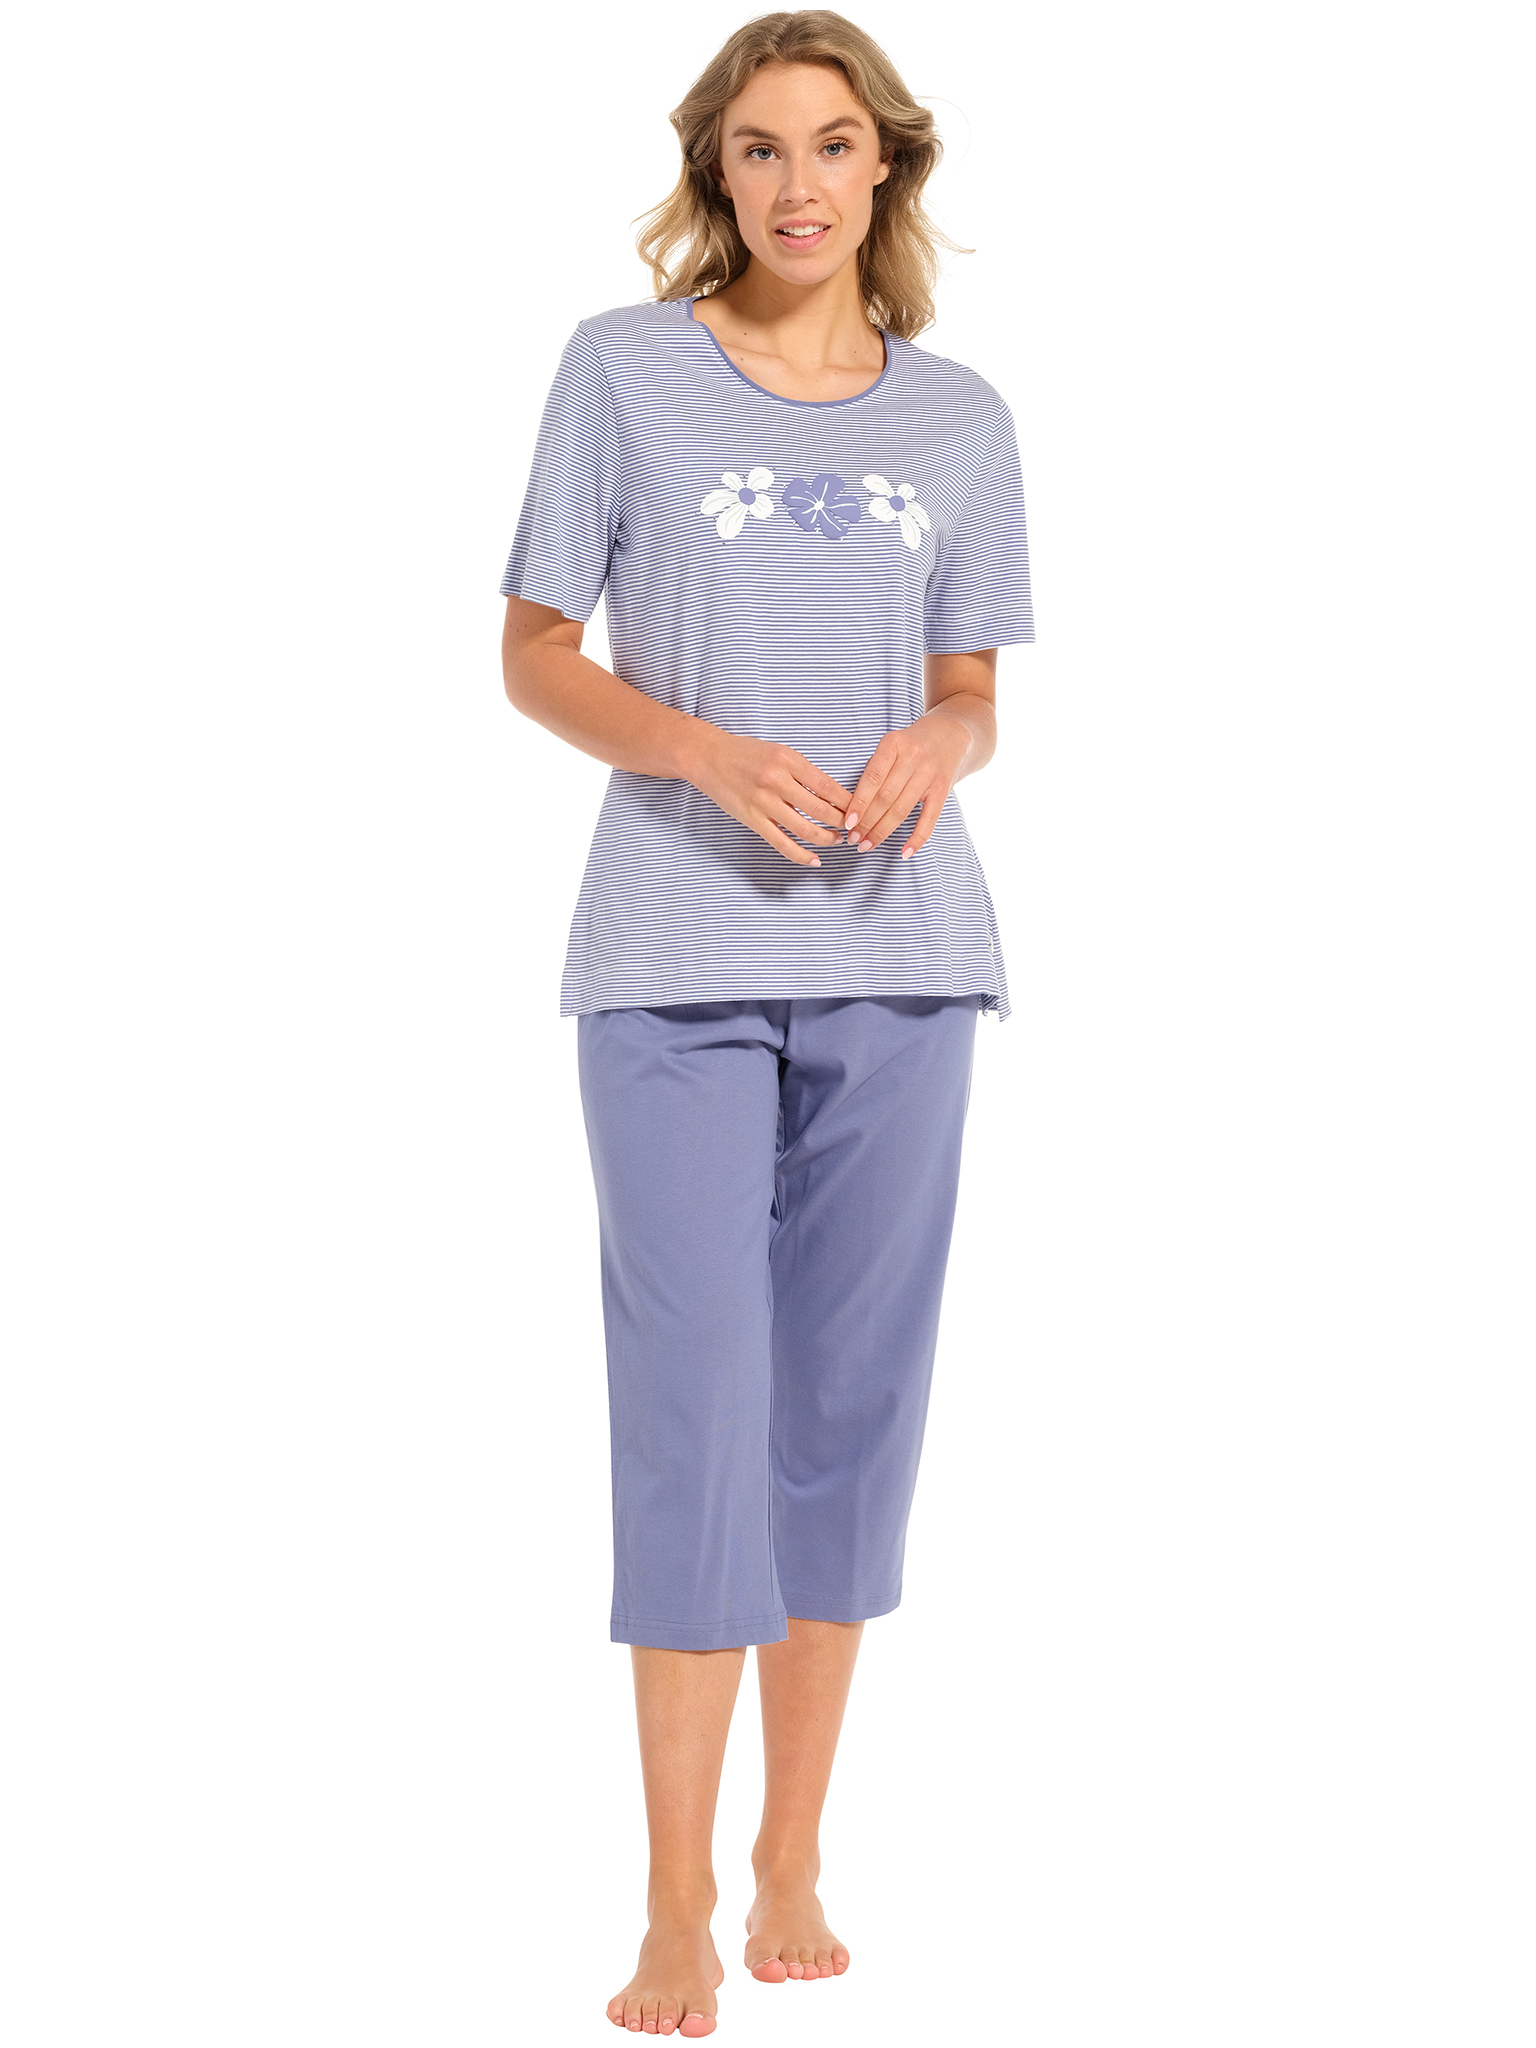 Pastunette - Blossoms - Dames Pyjamaset - Blauw - Organisch Katoen - Maat 44